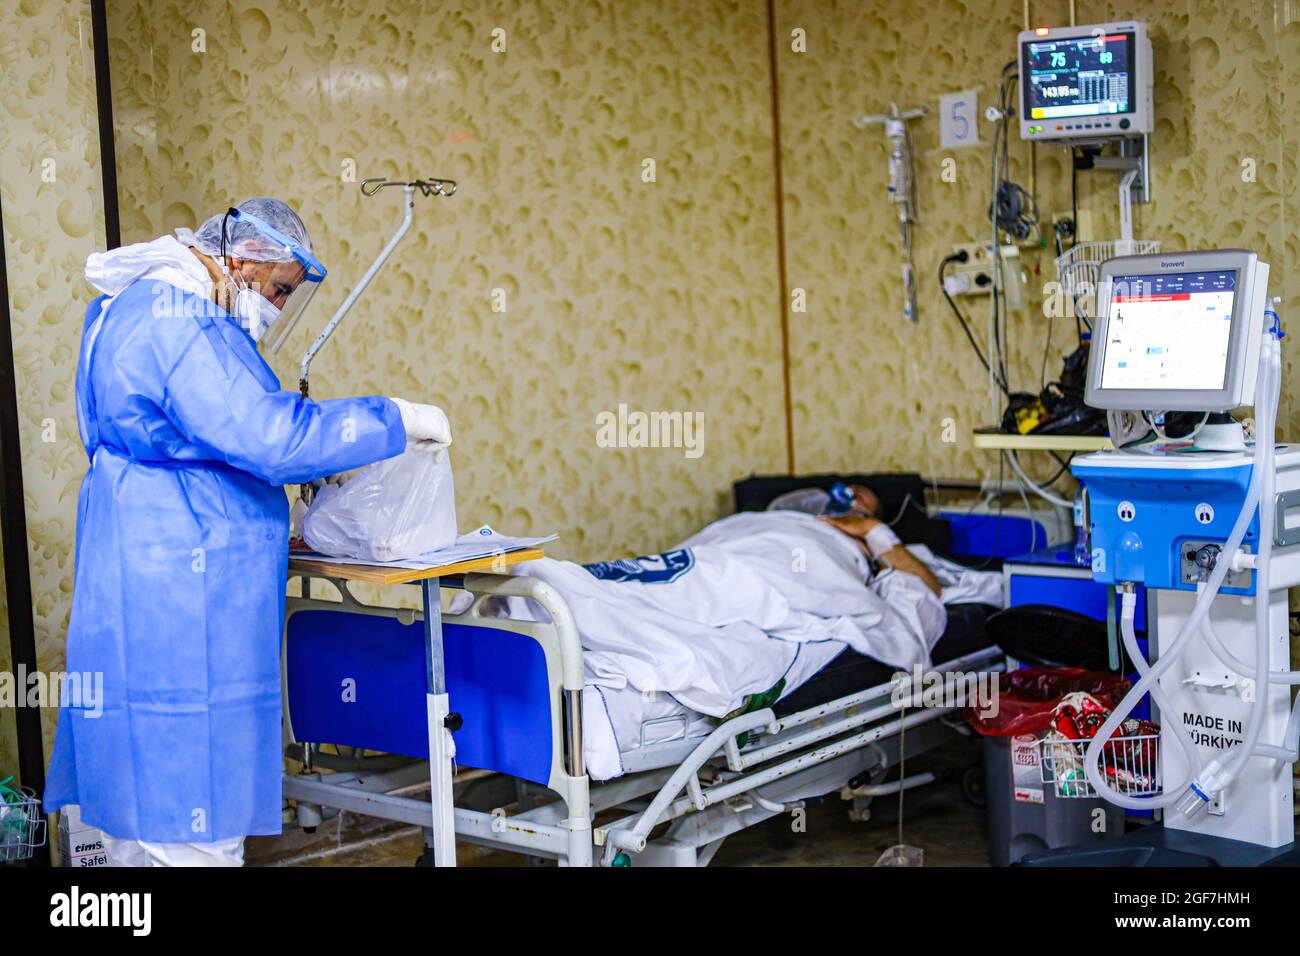 Idlib, Syrien. August 2021. In einem Isolationskrankenhaus in der Stadt Idlib kümmert sich ein Arzt in einem Schutzanzug um einen älteren Mann.die Delta-Mutante kam in Idlib an, wo im Idlib-Labor für 92 Proben eine Genotypisierung durchgeführt wurde. Die Alpha-Mutante wurde in 6 Proben und die Delta-Mutante in 47 Proben gefunden, und es gibt einen signifikanten Anstieg der Anzahl der bestätigten Fälle von Covid-19 in den letzten Tagen. (Bild: © Omar Albam/SOPA Images via ZUMA Press Wire) Stockfoto